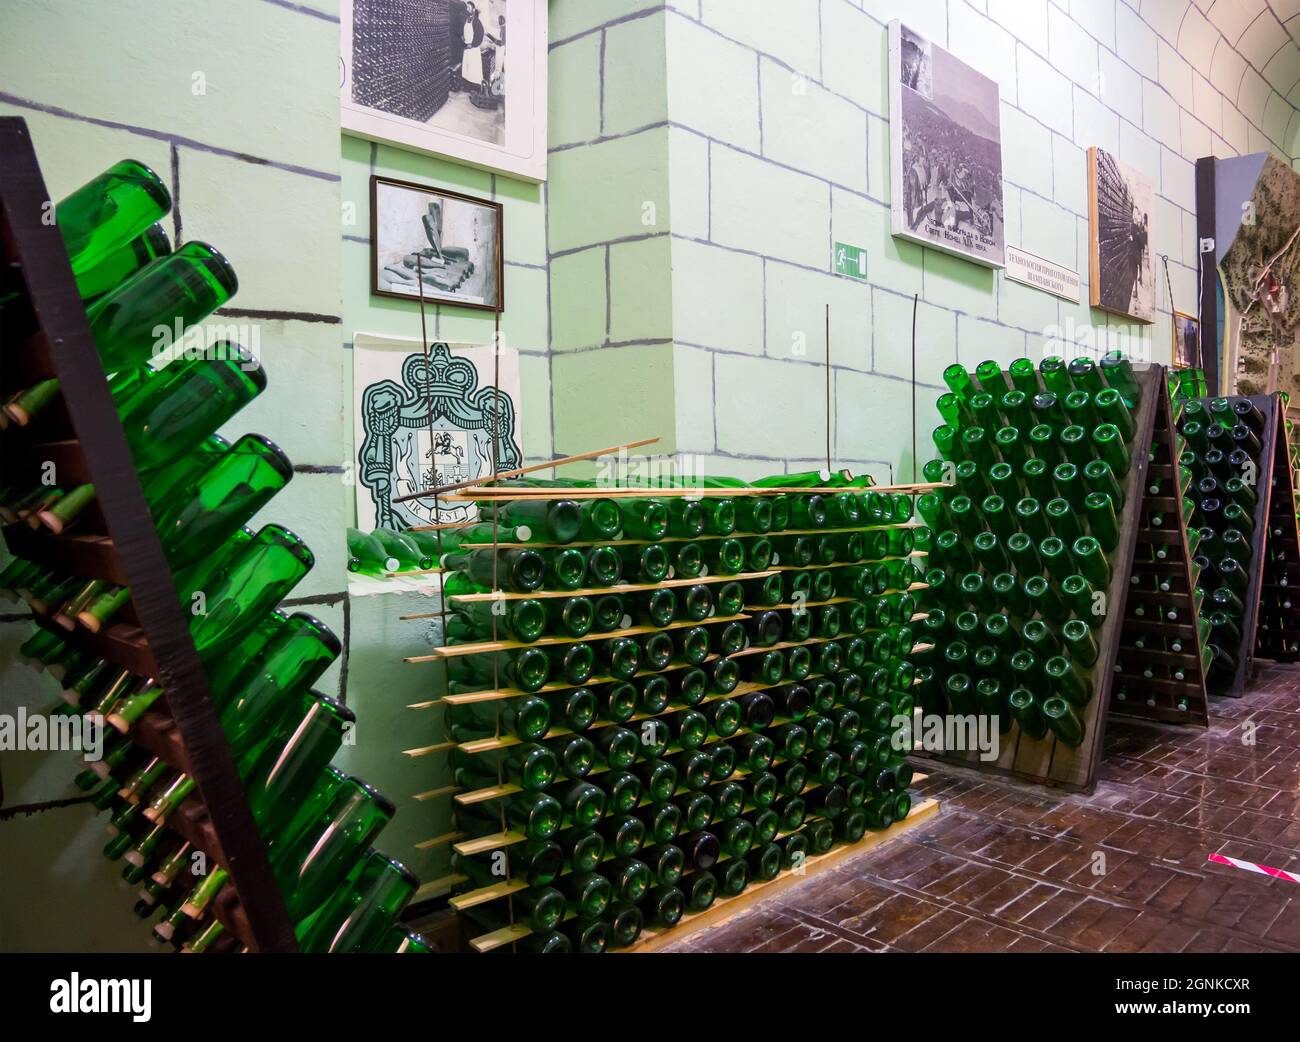 Novyj Svet, Crimea - 17 settembre 2020: Esempi dei processi di stoccaggio e rimunaggio dello champagne. Esposizione della fabbrica di champagne Novy Svet Foto Stock